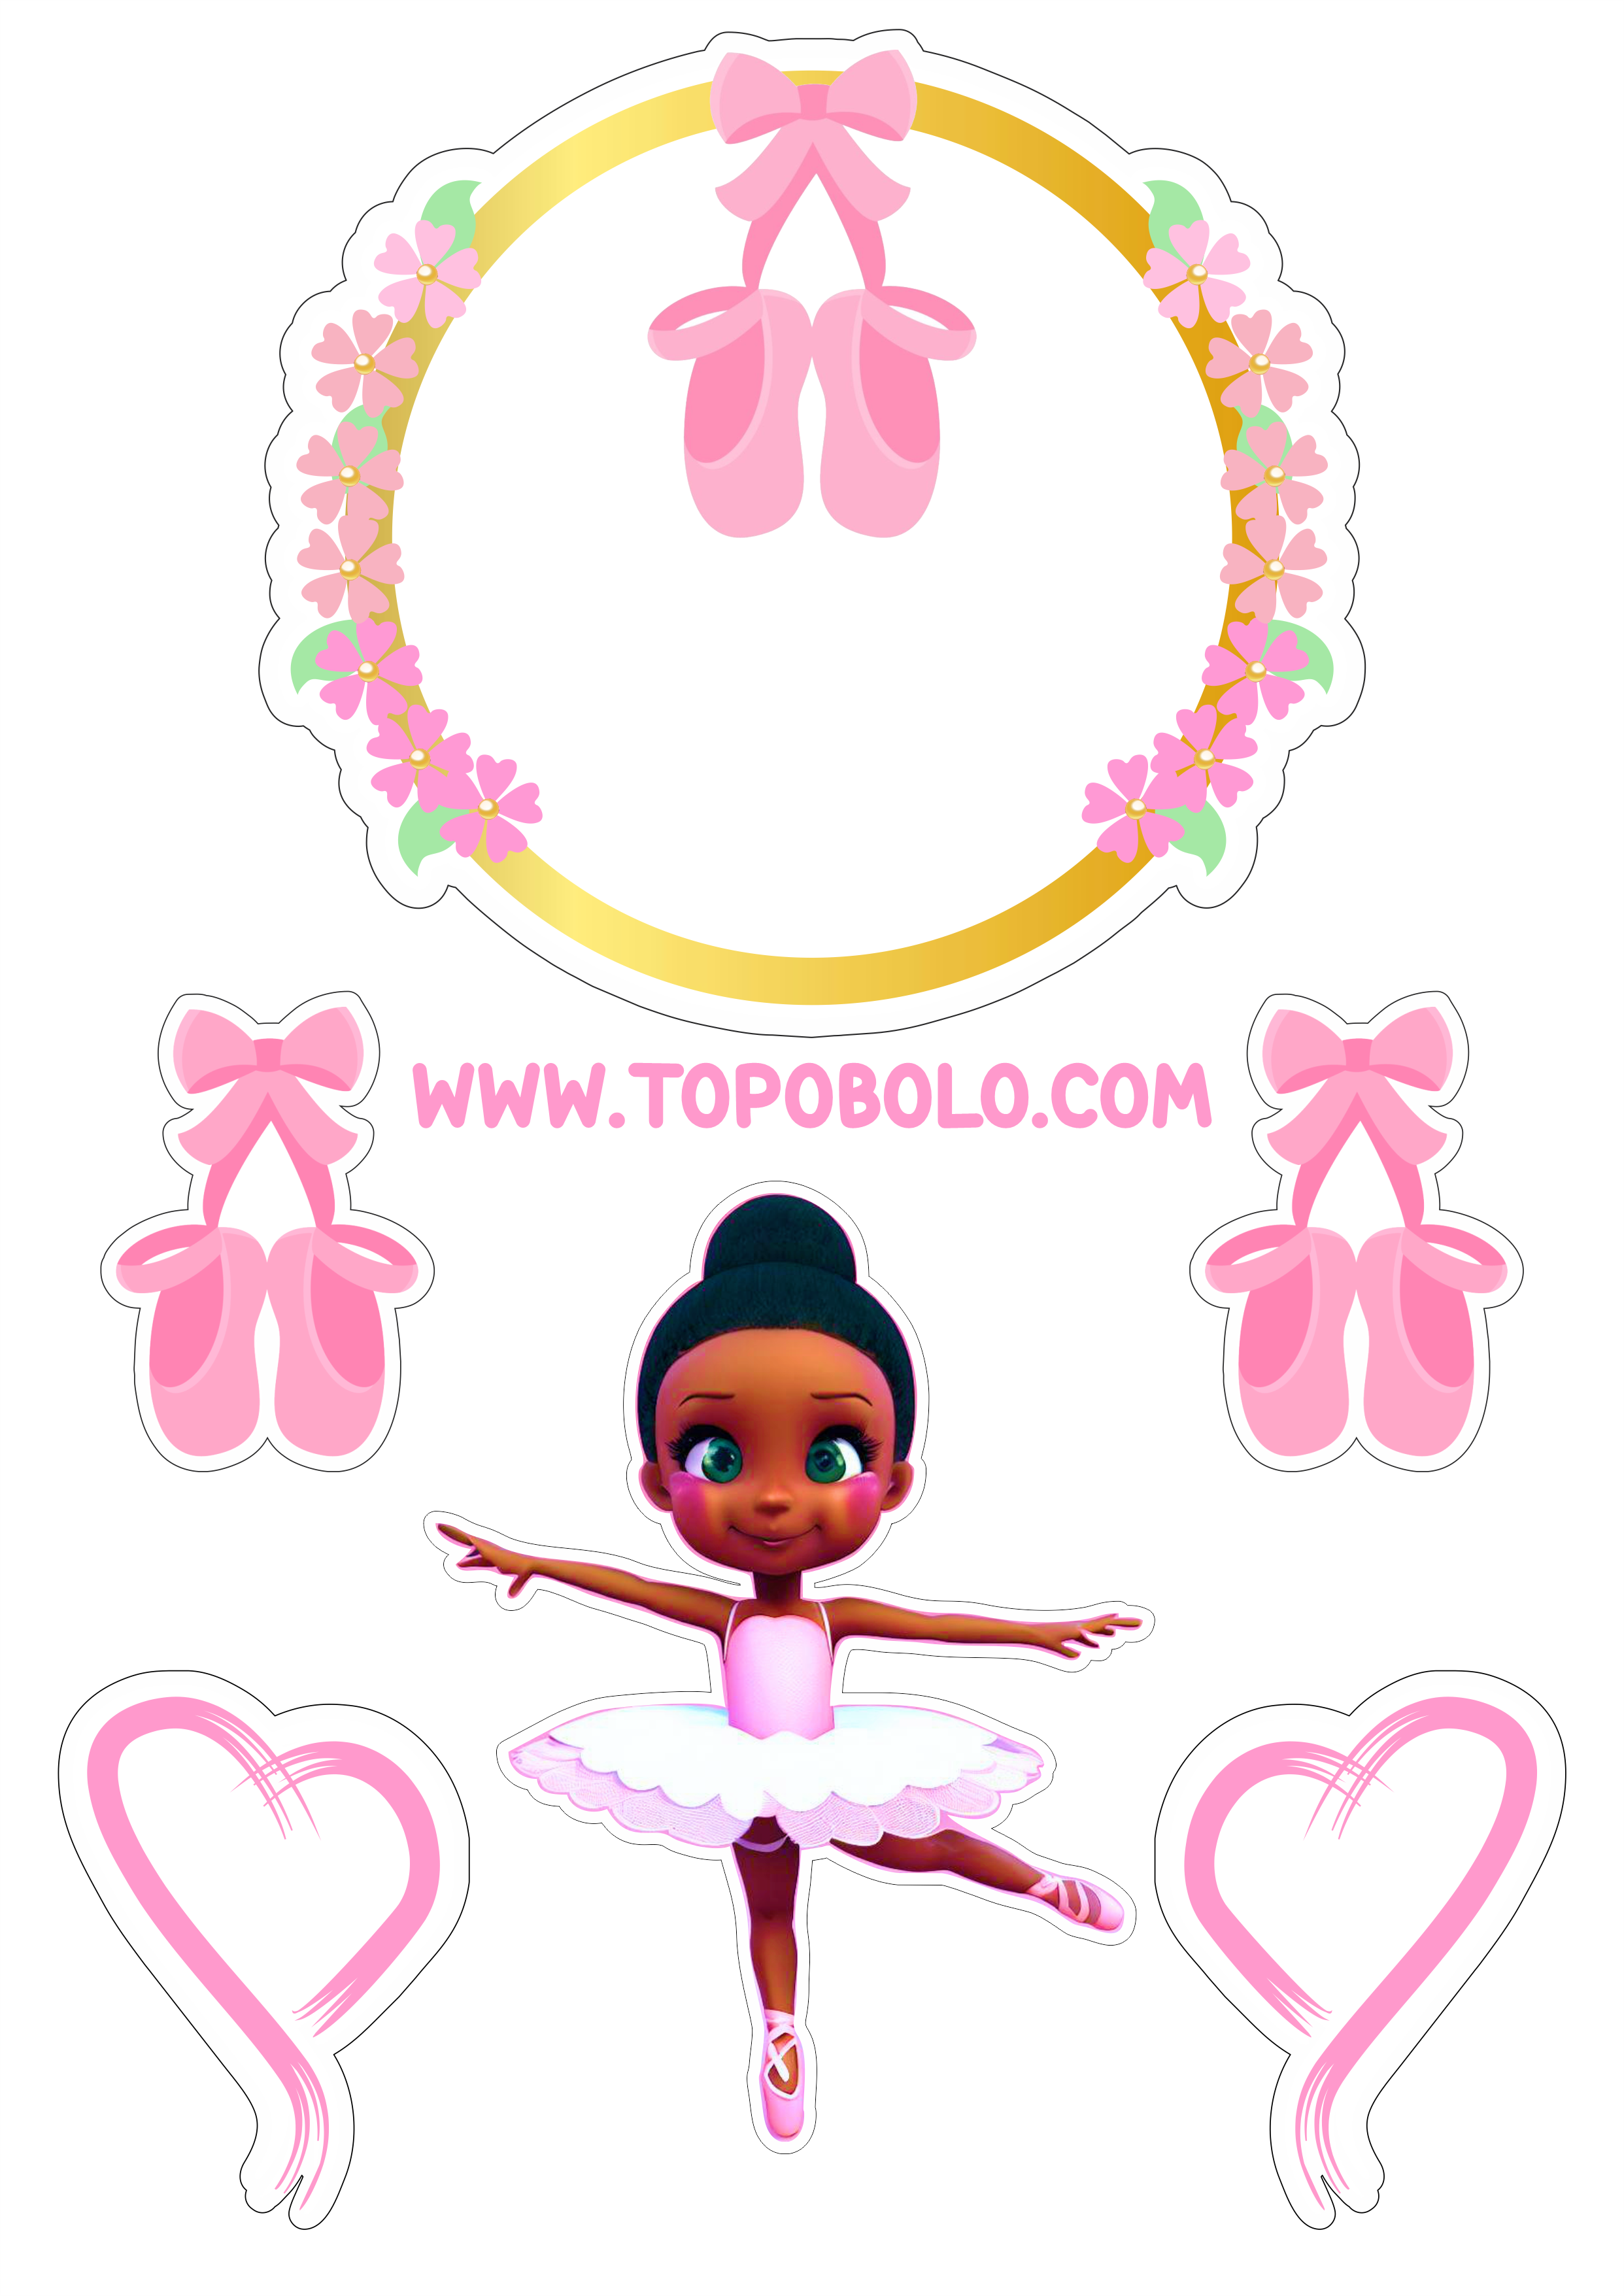 Bailarina topo de bolo aniversário menina decoração rosa com corações boneca fofinha bolo personalizado png image